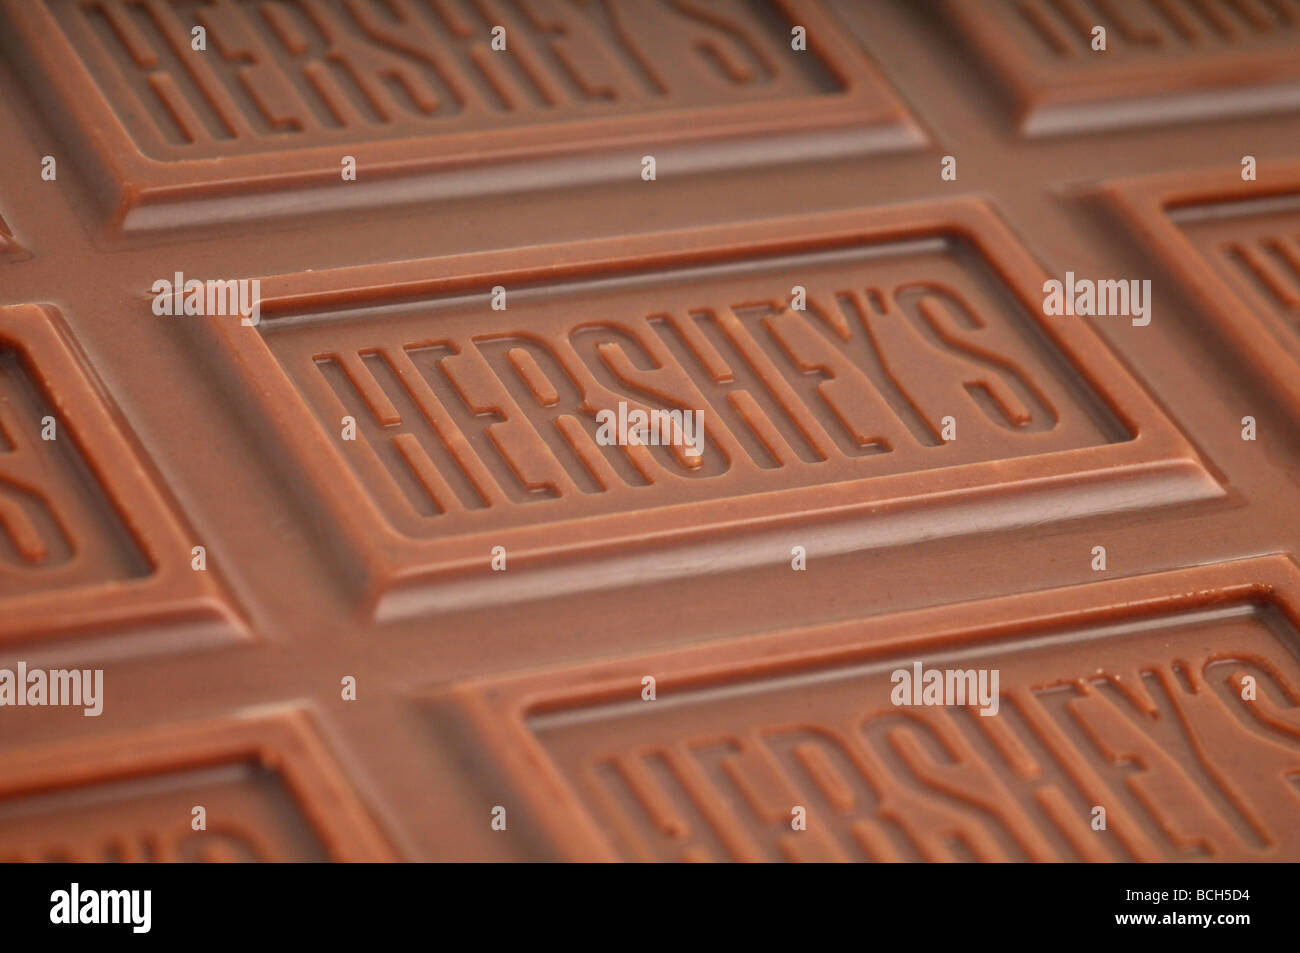 Heshey's chocolate bar Stock Photo